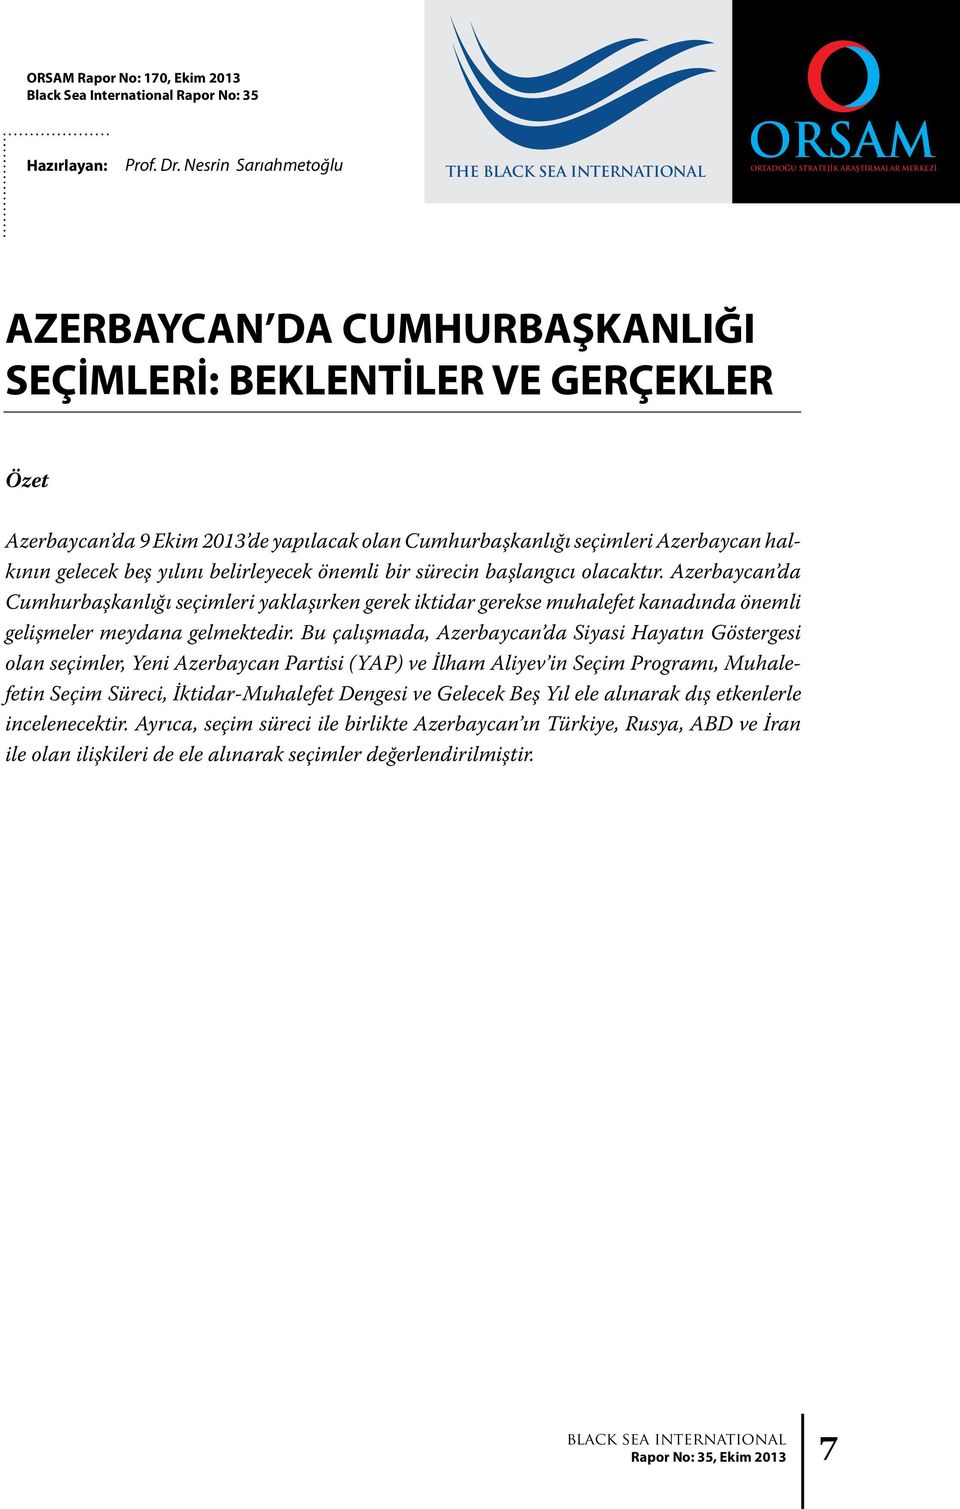 Cumhurbaşkanlığı seçimleri Azerbaycan halkının gelecek beş yılını belirleyecek önemli bir sürecin başlangıcı olacaktır.